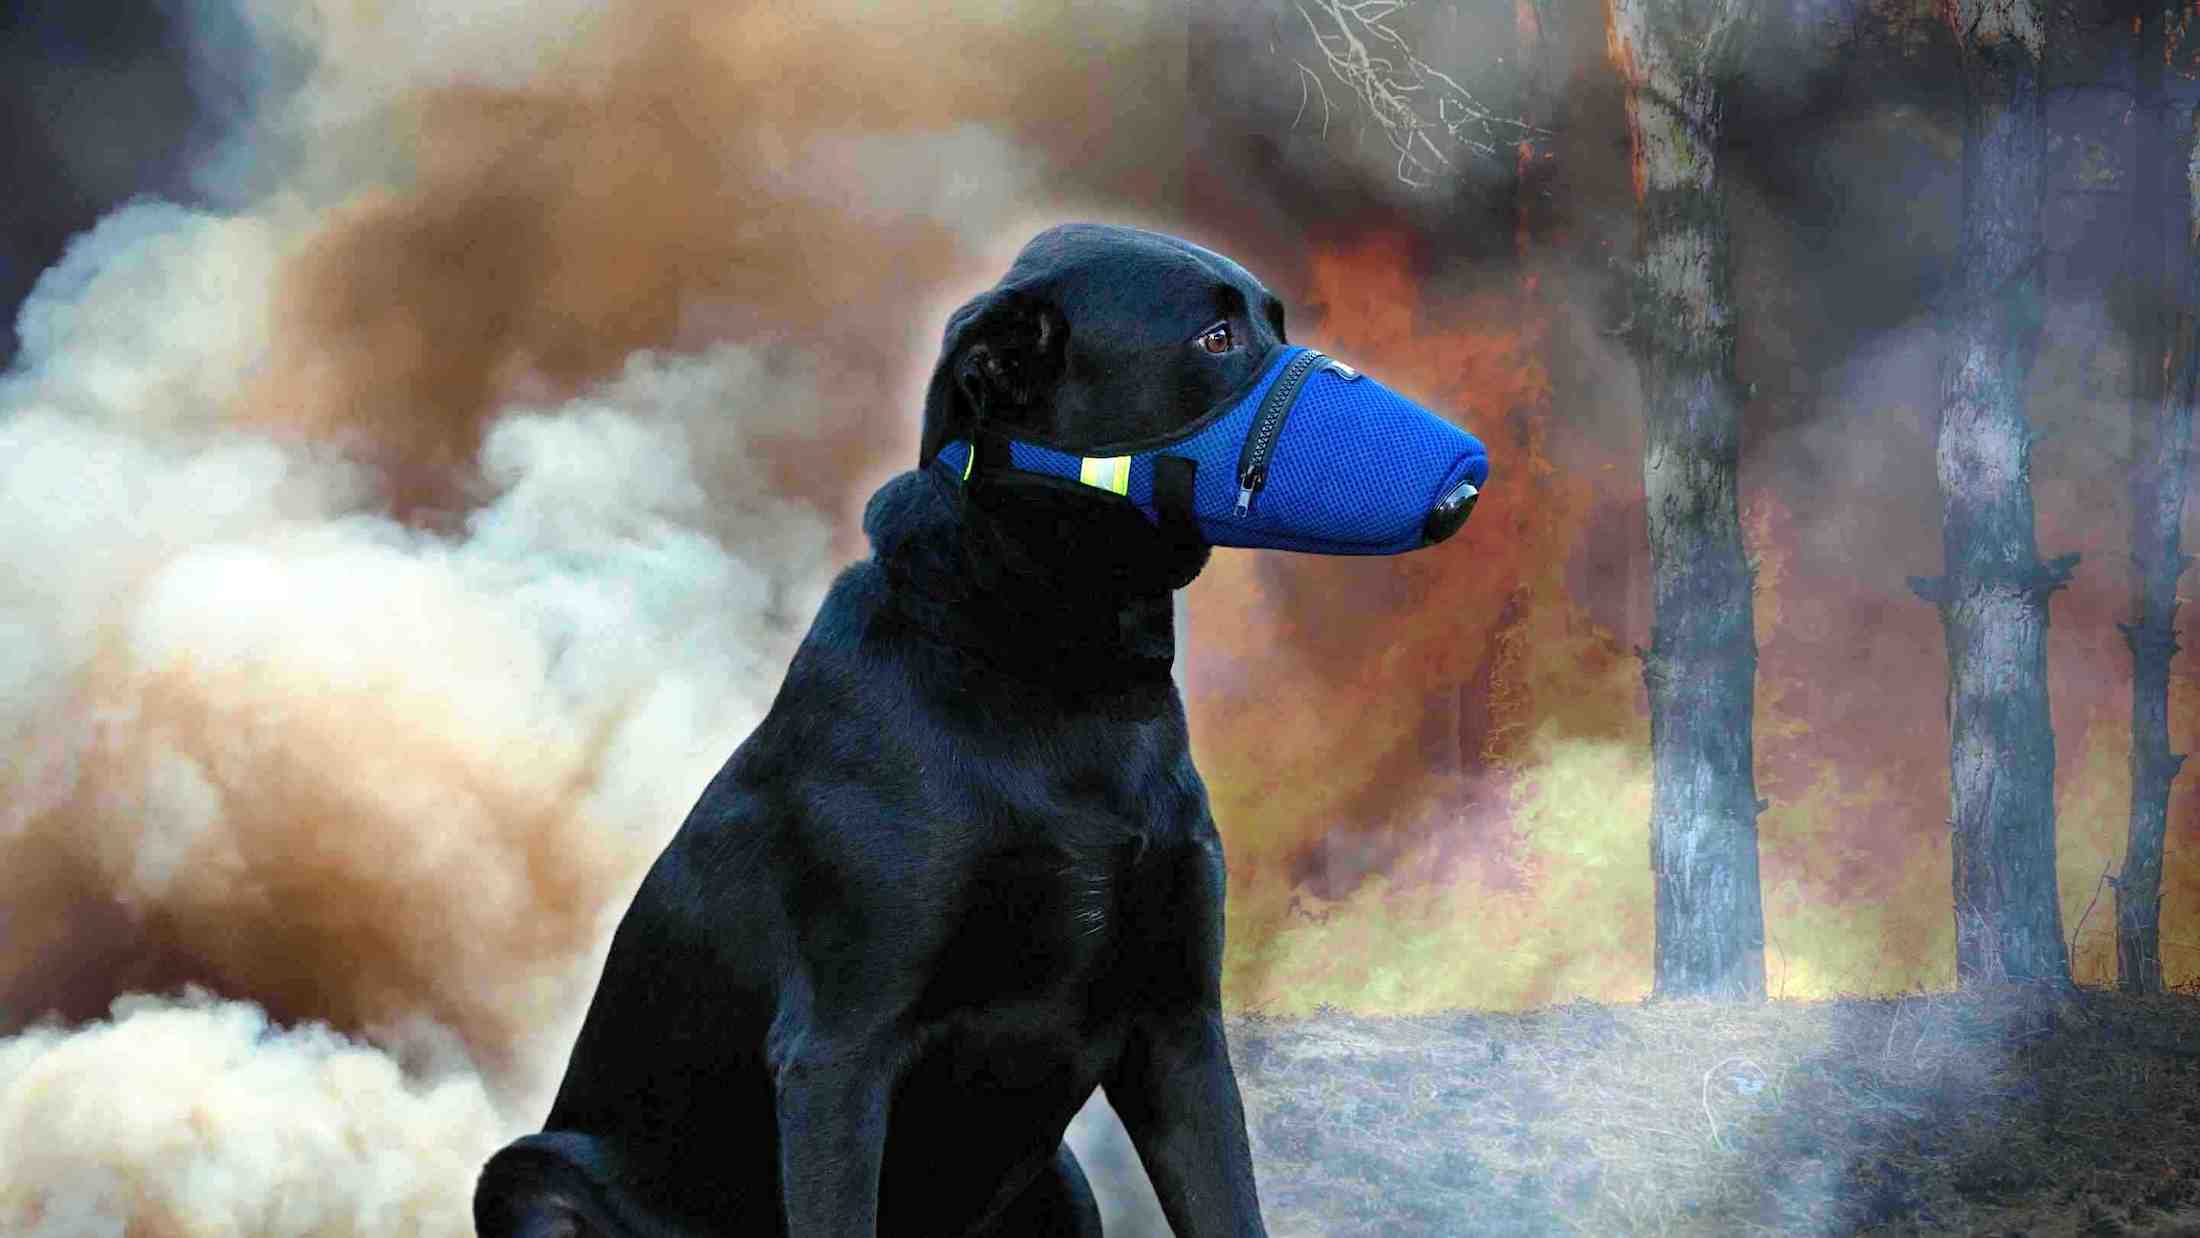 K9 Mask® Dog Air Filter Ansiktsmaske for hunder for røyk, støv, aske, pollen, tåregass, rødvann, kjemikalier, tåregass, bakterier, allergener